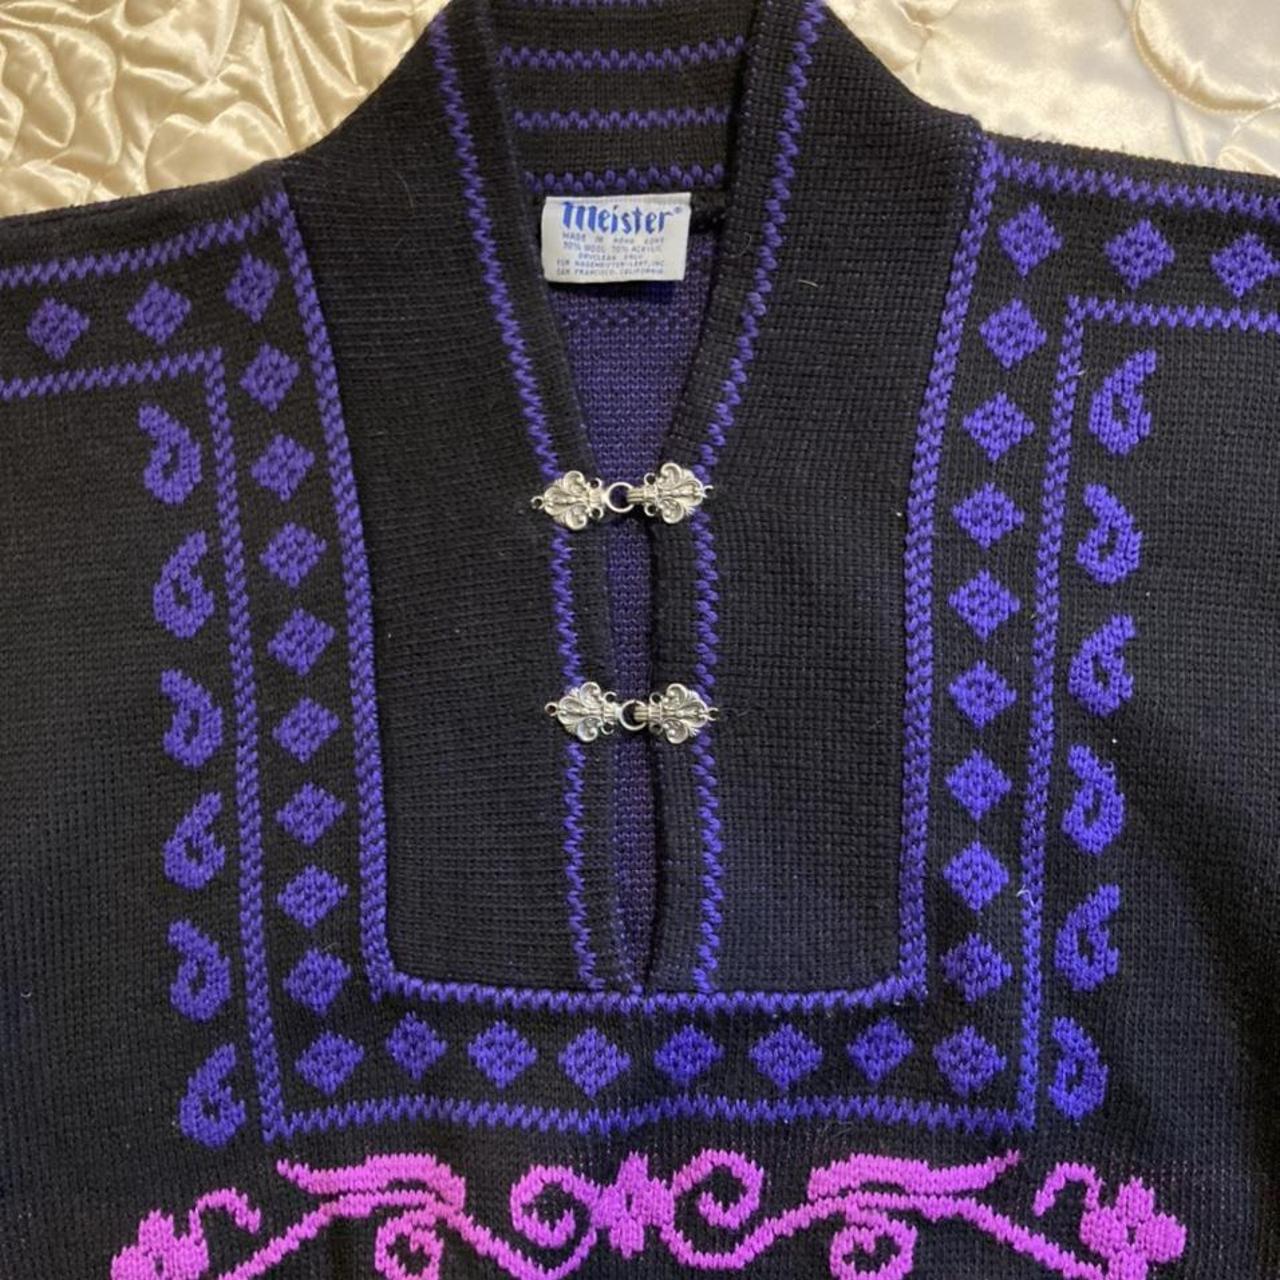 Product Image 2 - Vintage MeisterNordic wool ski sweater